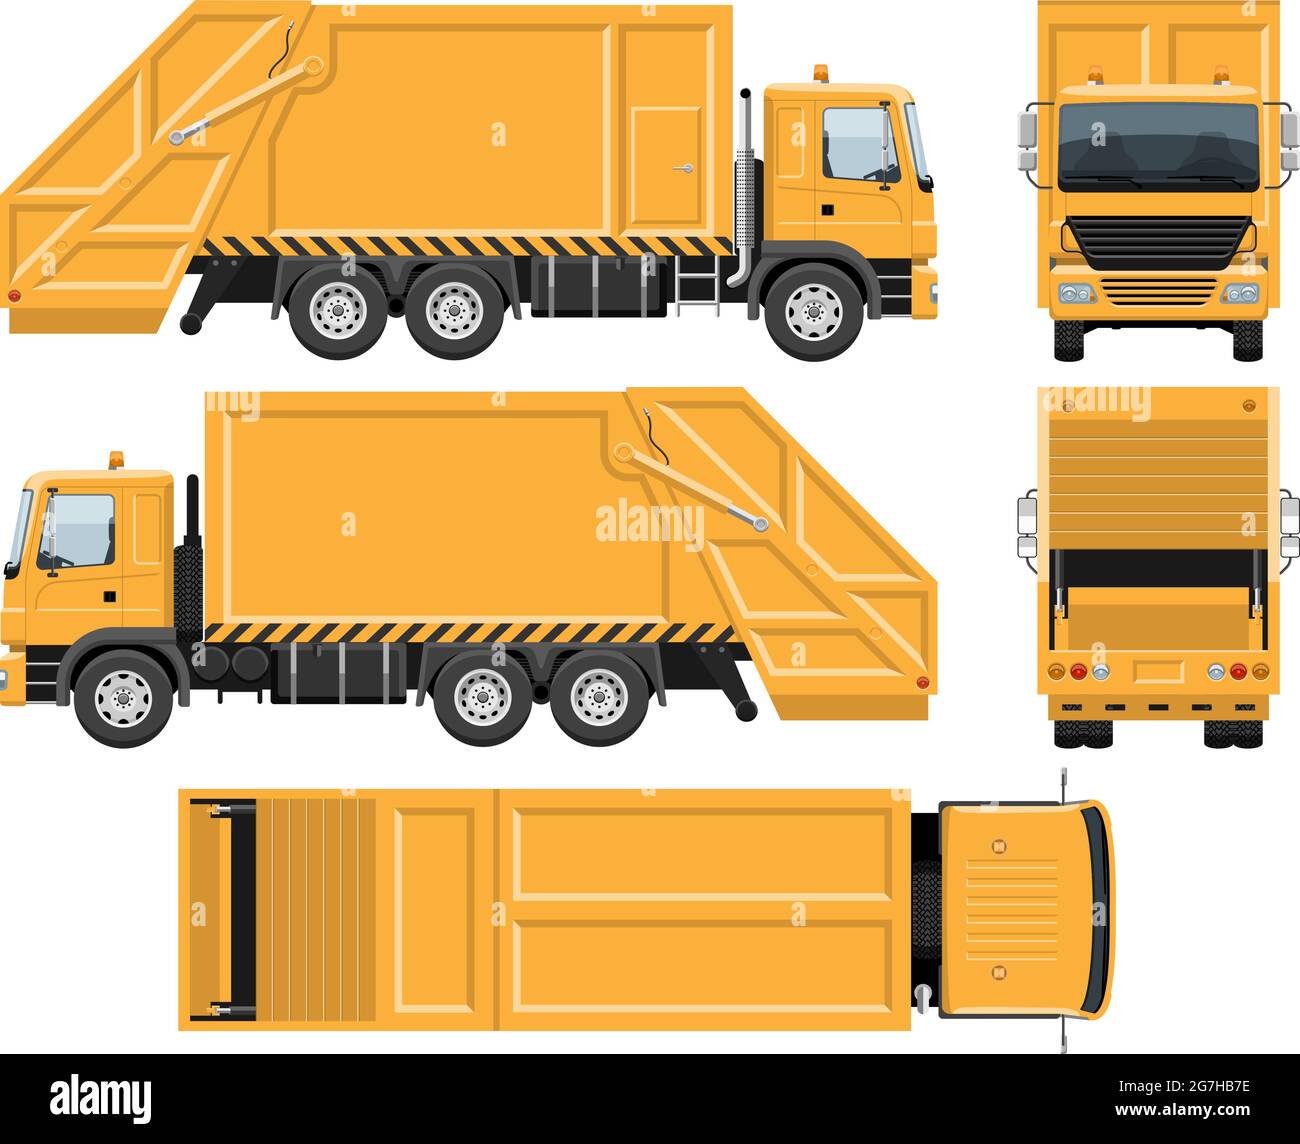 Plantilla vectorial para camiones de basura con colores sencillos sin degradados ni efectos. Vista lateral, frontal, posterior y superior Ilustración del Vector